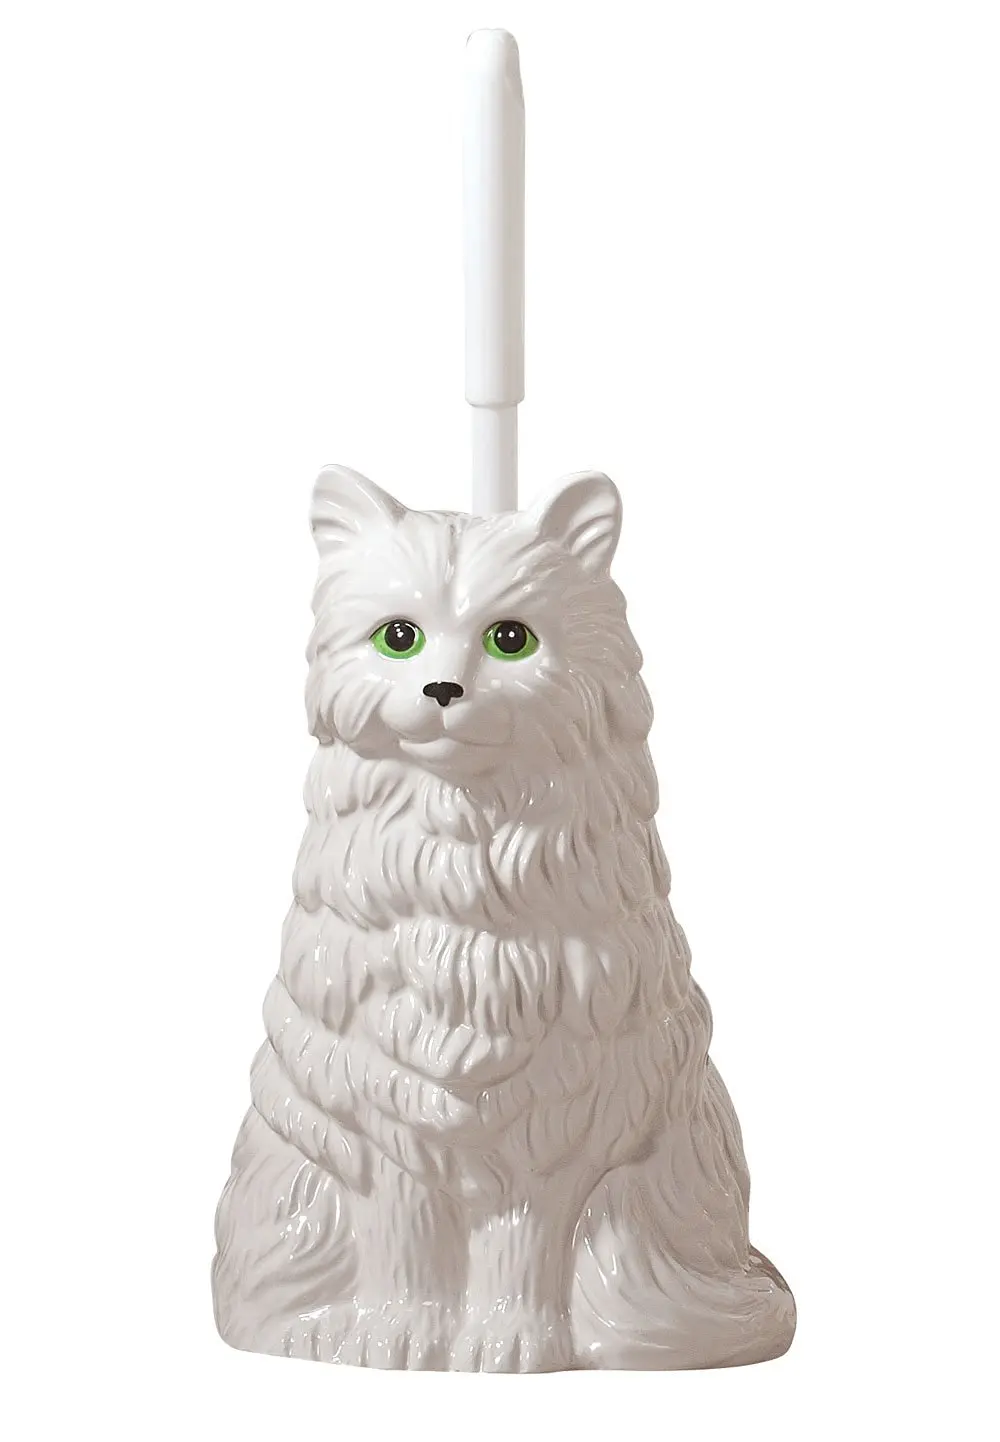 cat shaped toilet brush holder